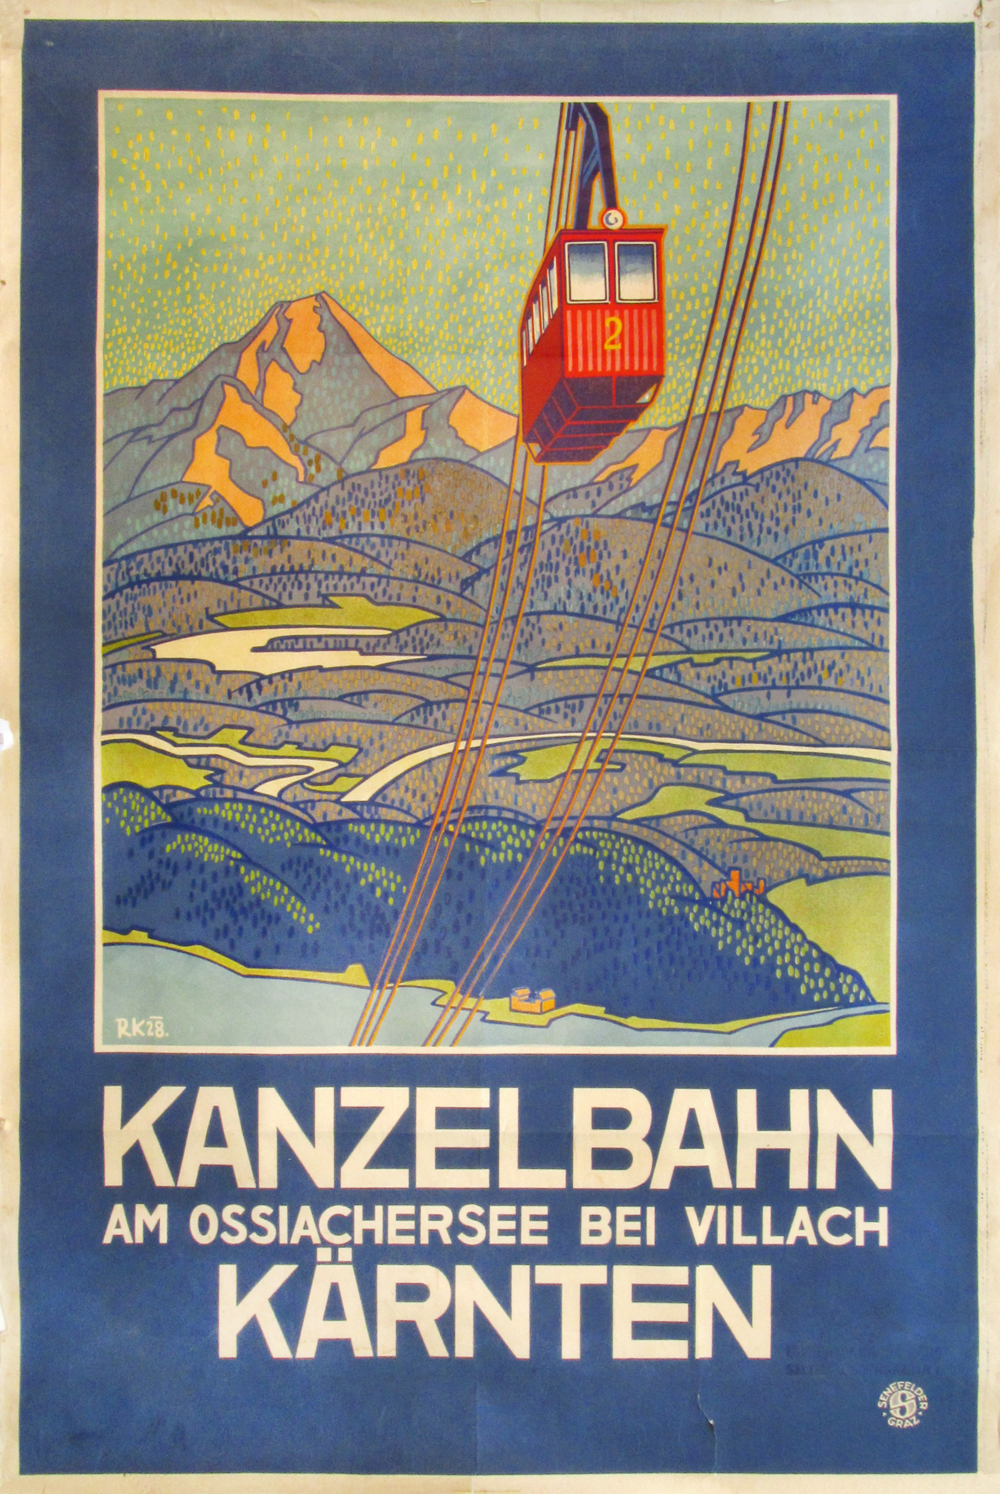 Kanzelbahn (on paper)